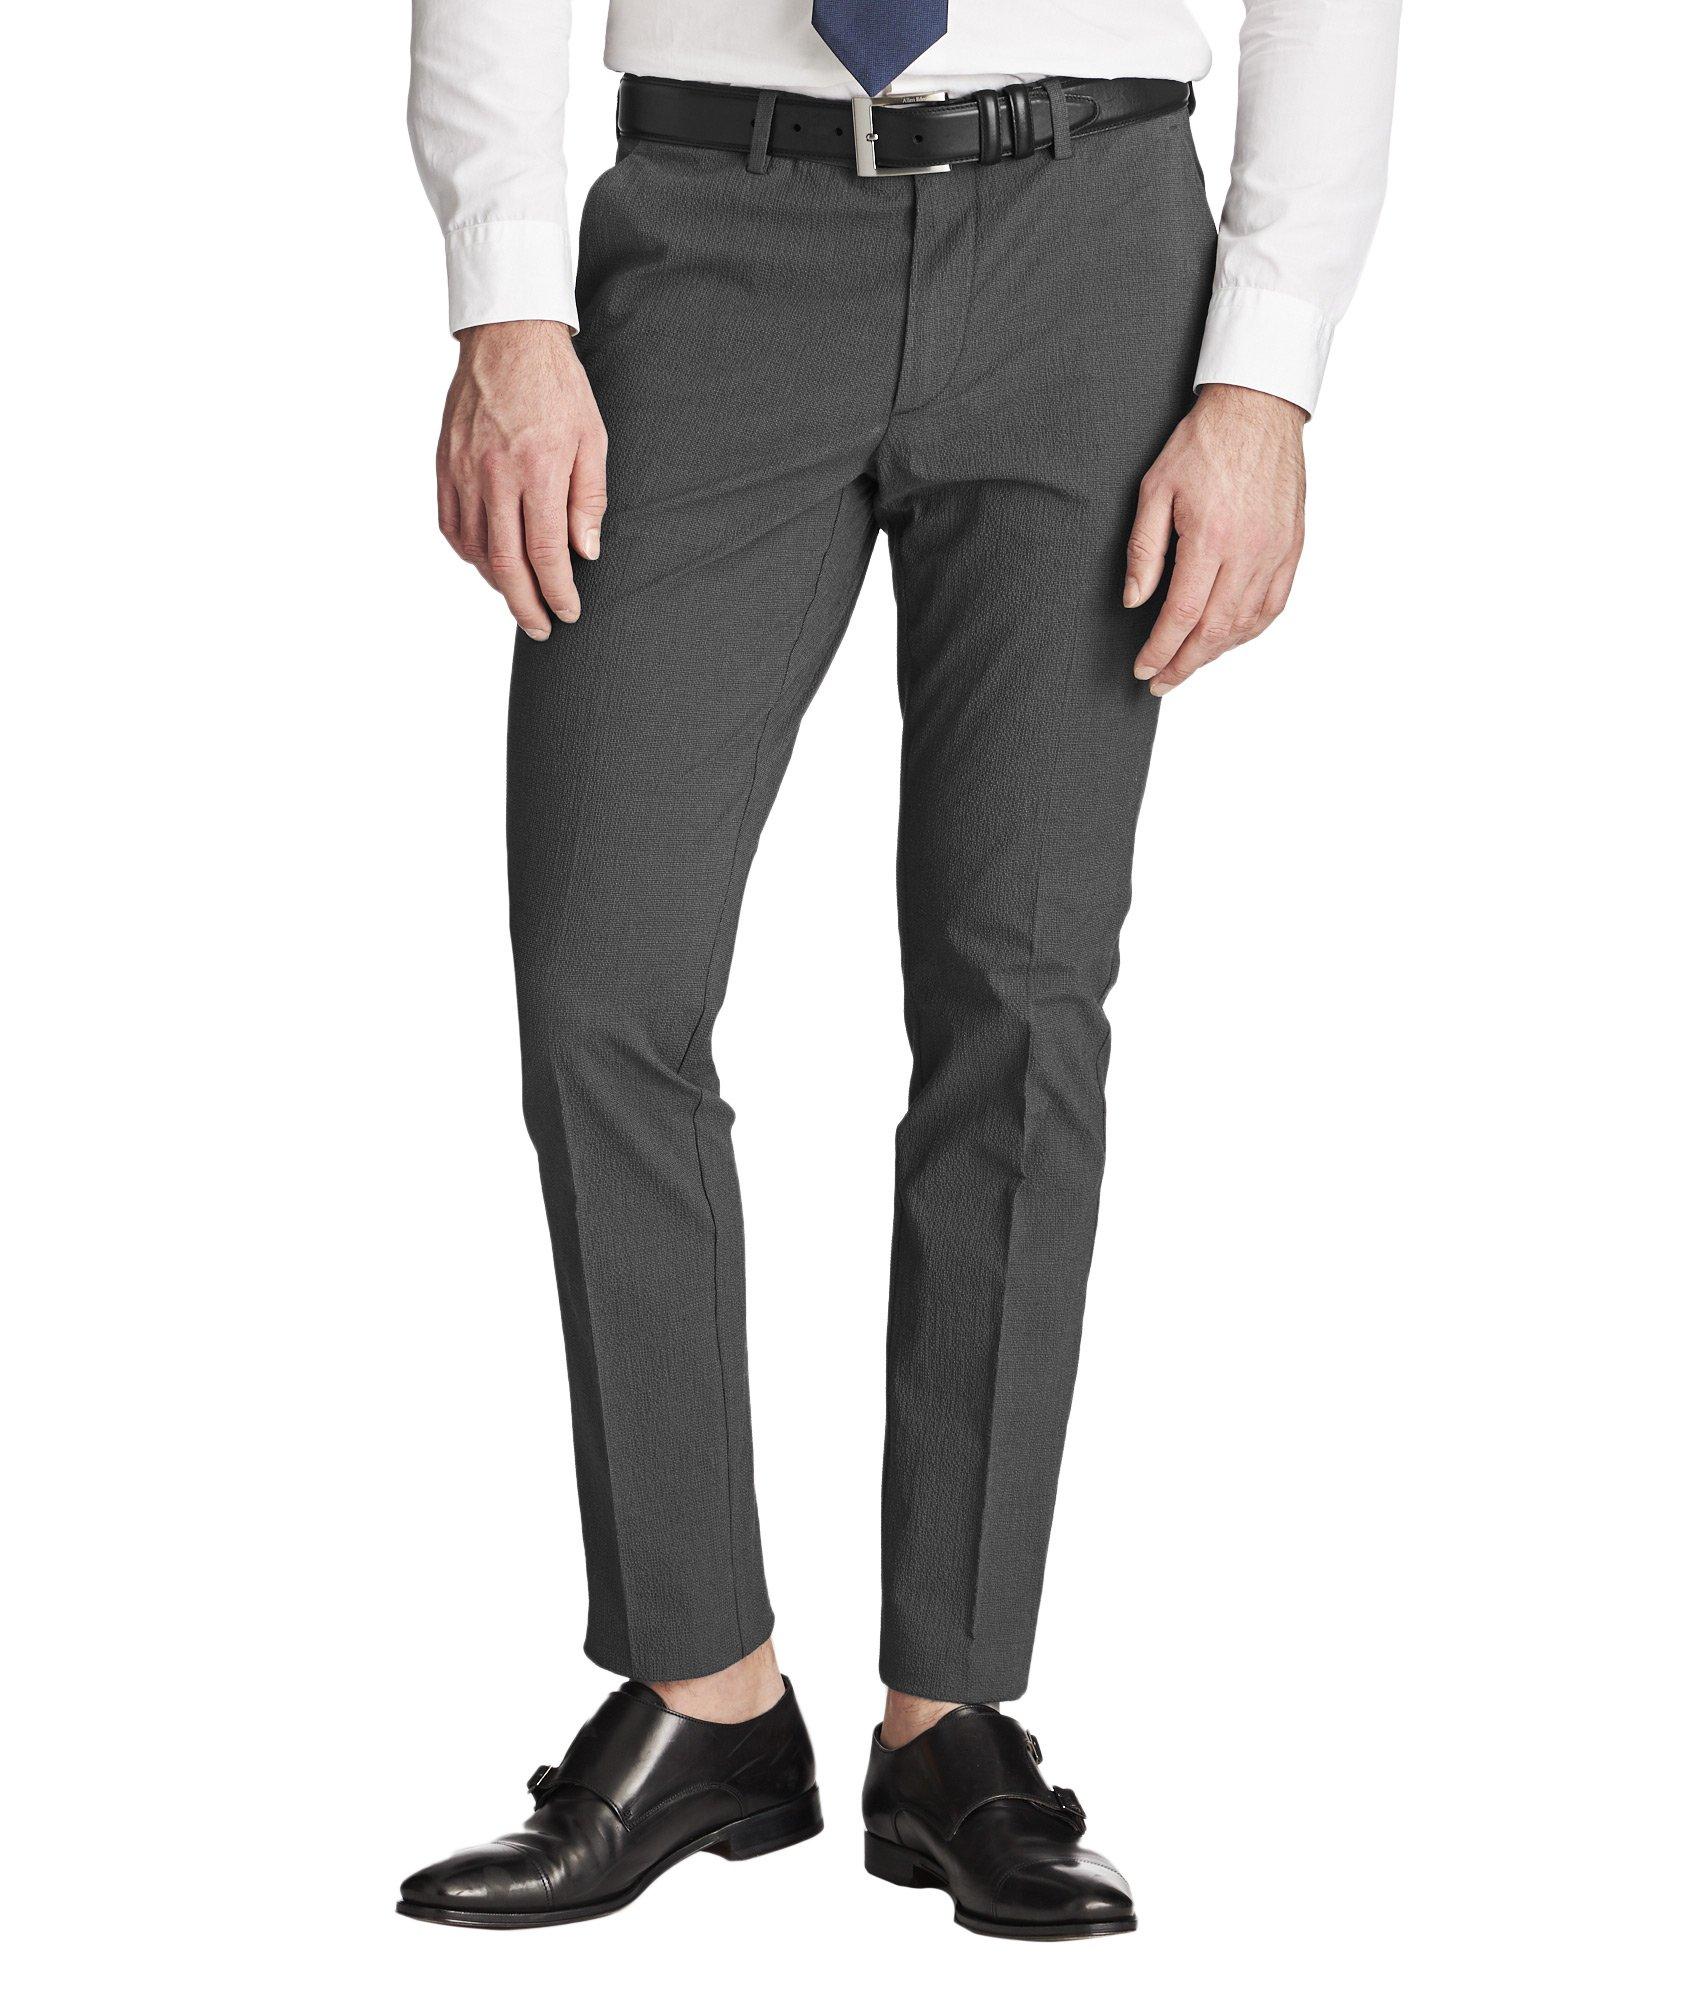 Pantalon Kaito en coton extensible de coupe amincie image 0